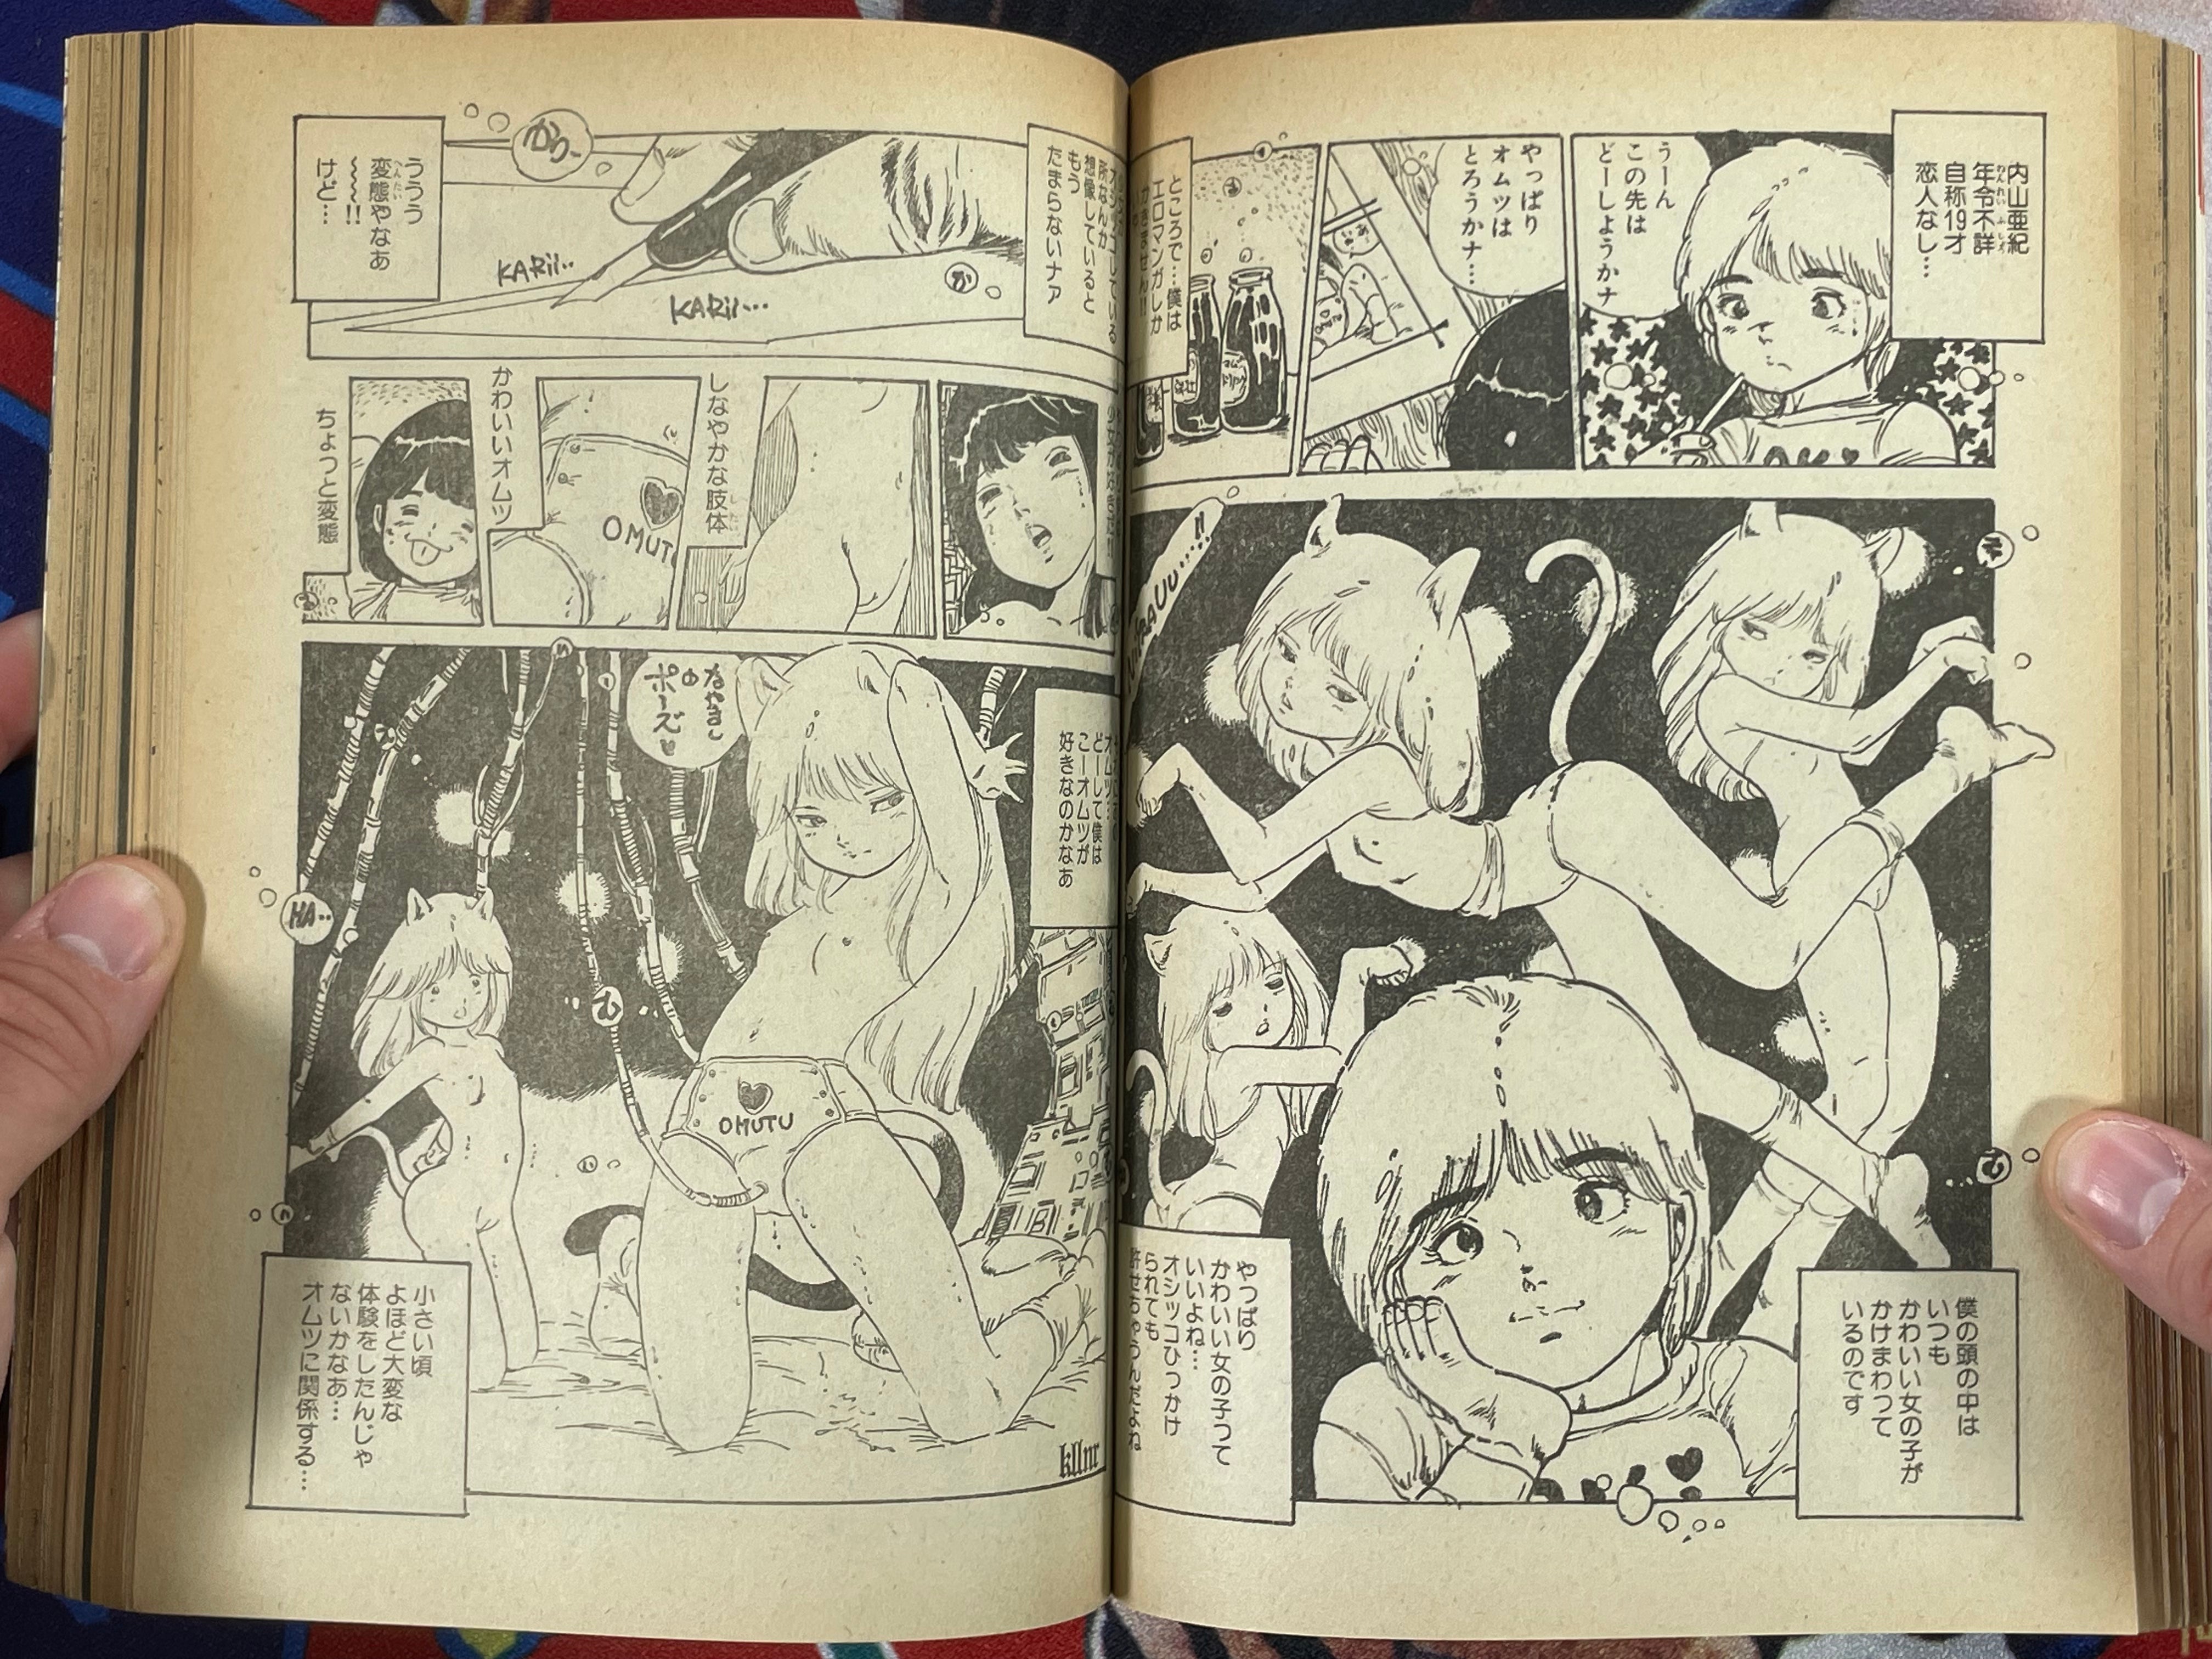 SF Manga Kyosaku Big Collection Magazine Part 13 - 1/1982